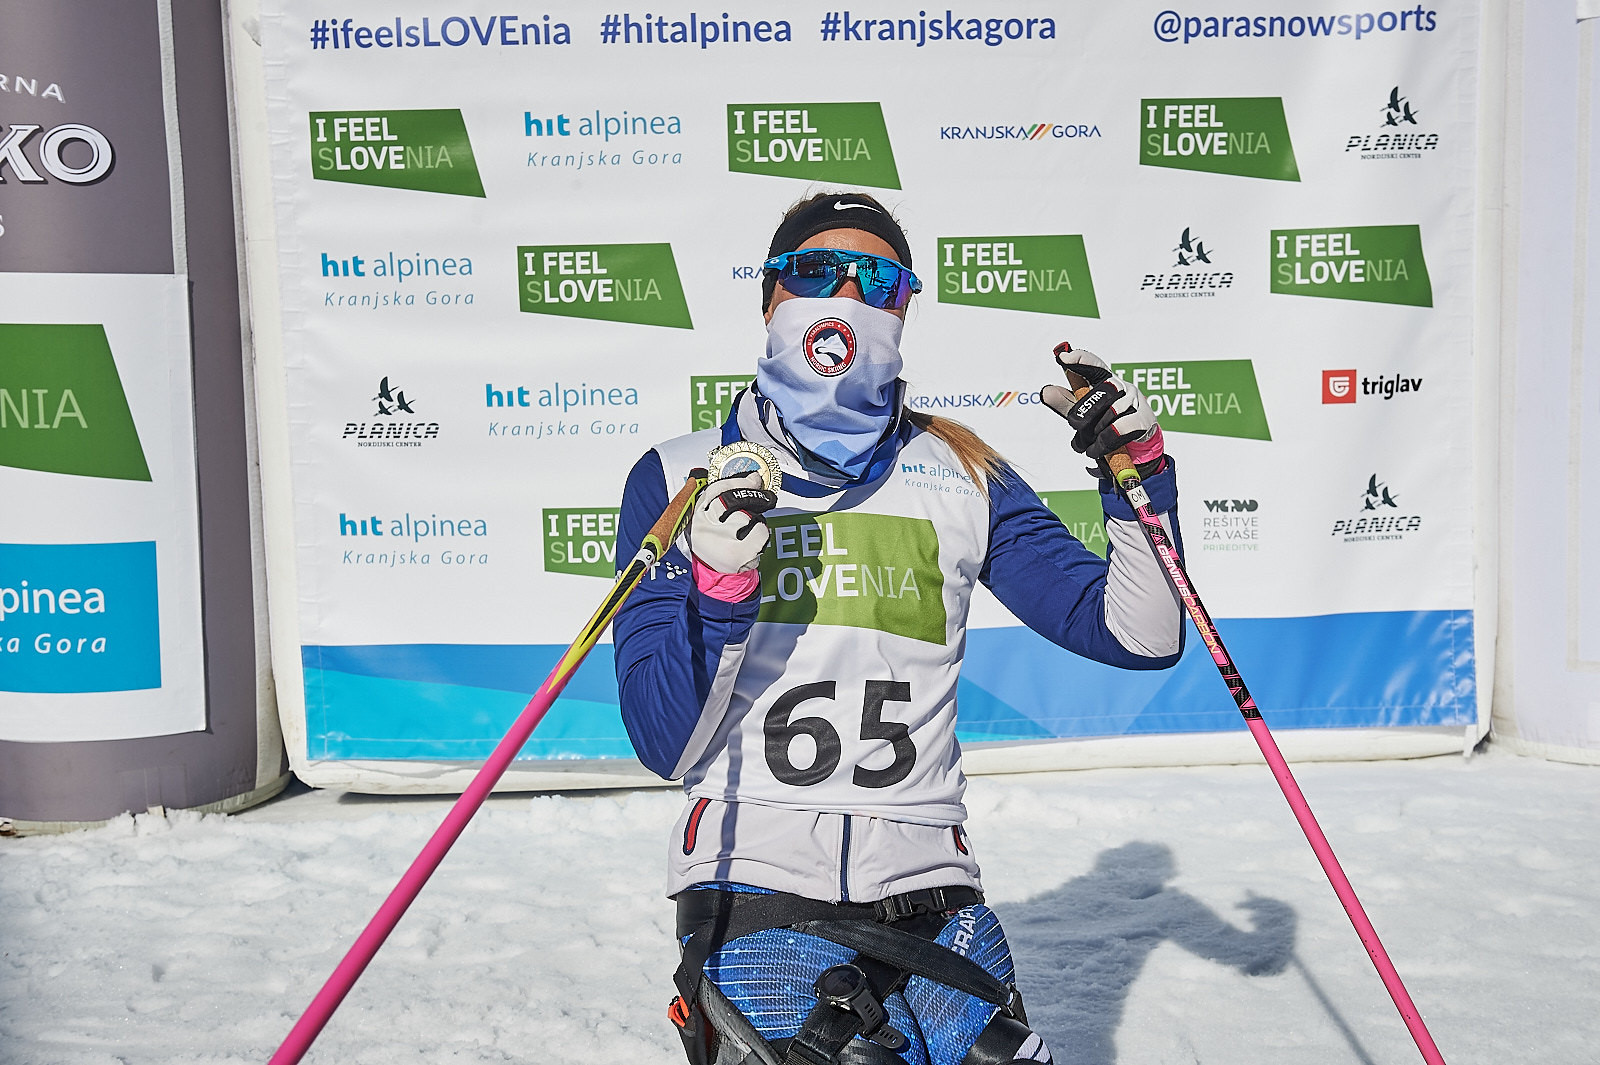 Masters and Lekomtsev win again at Para Nordic Skiing World Cup